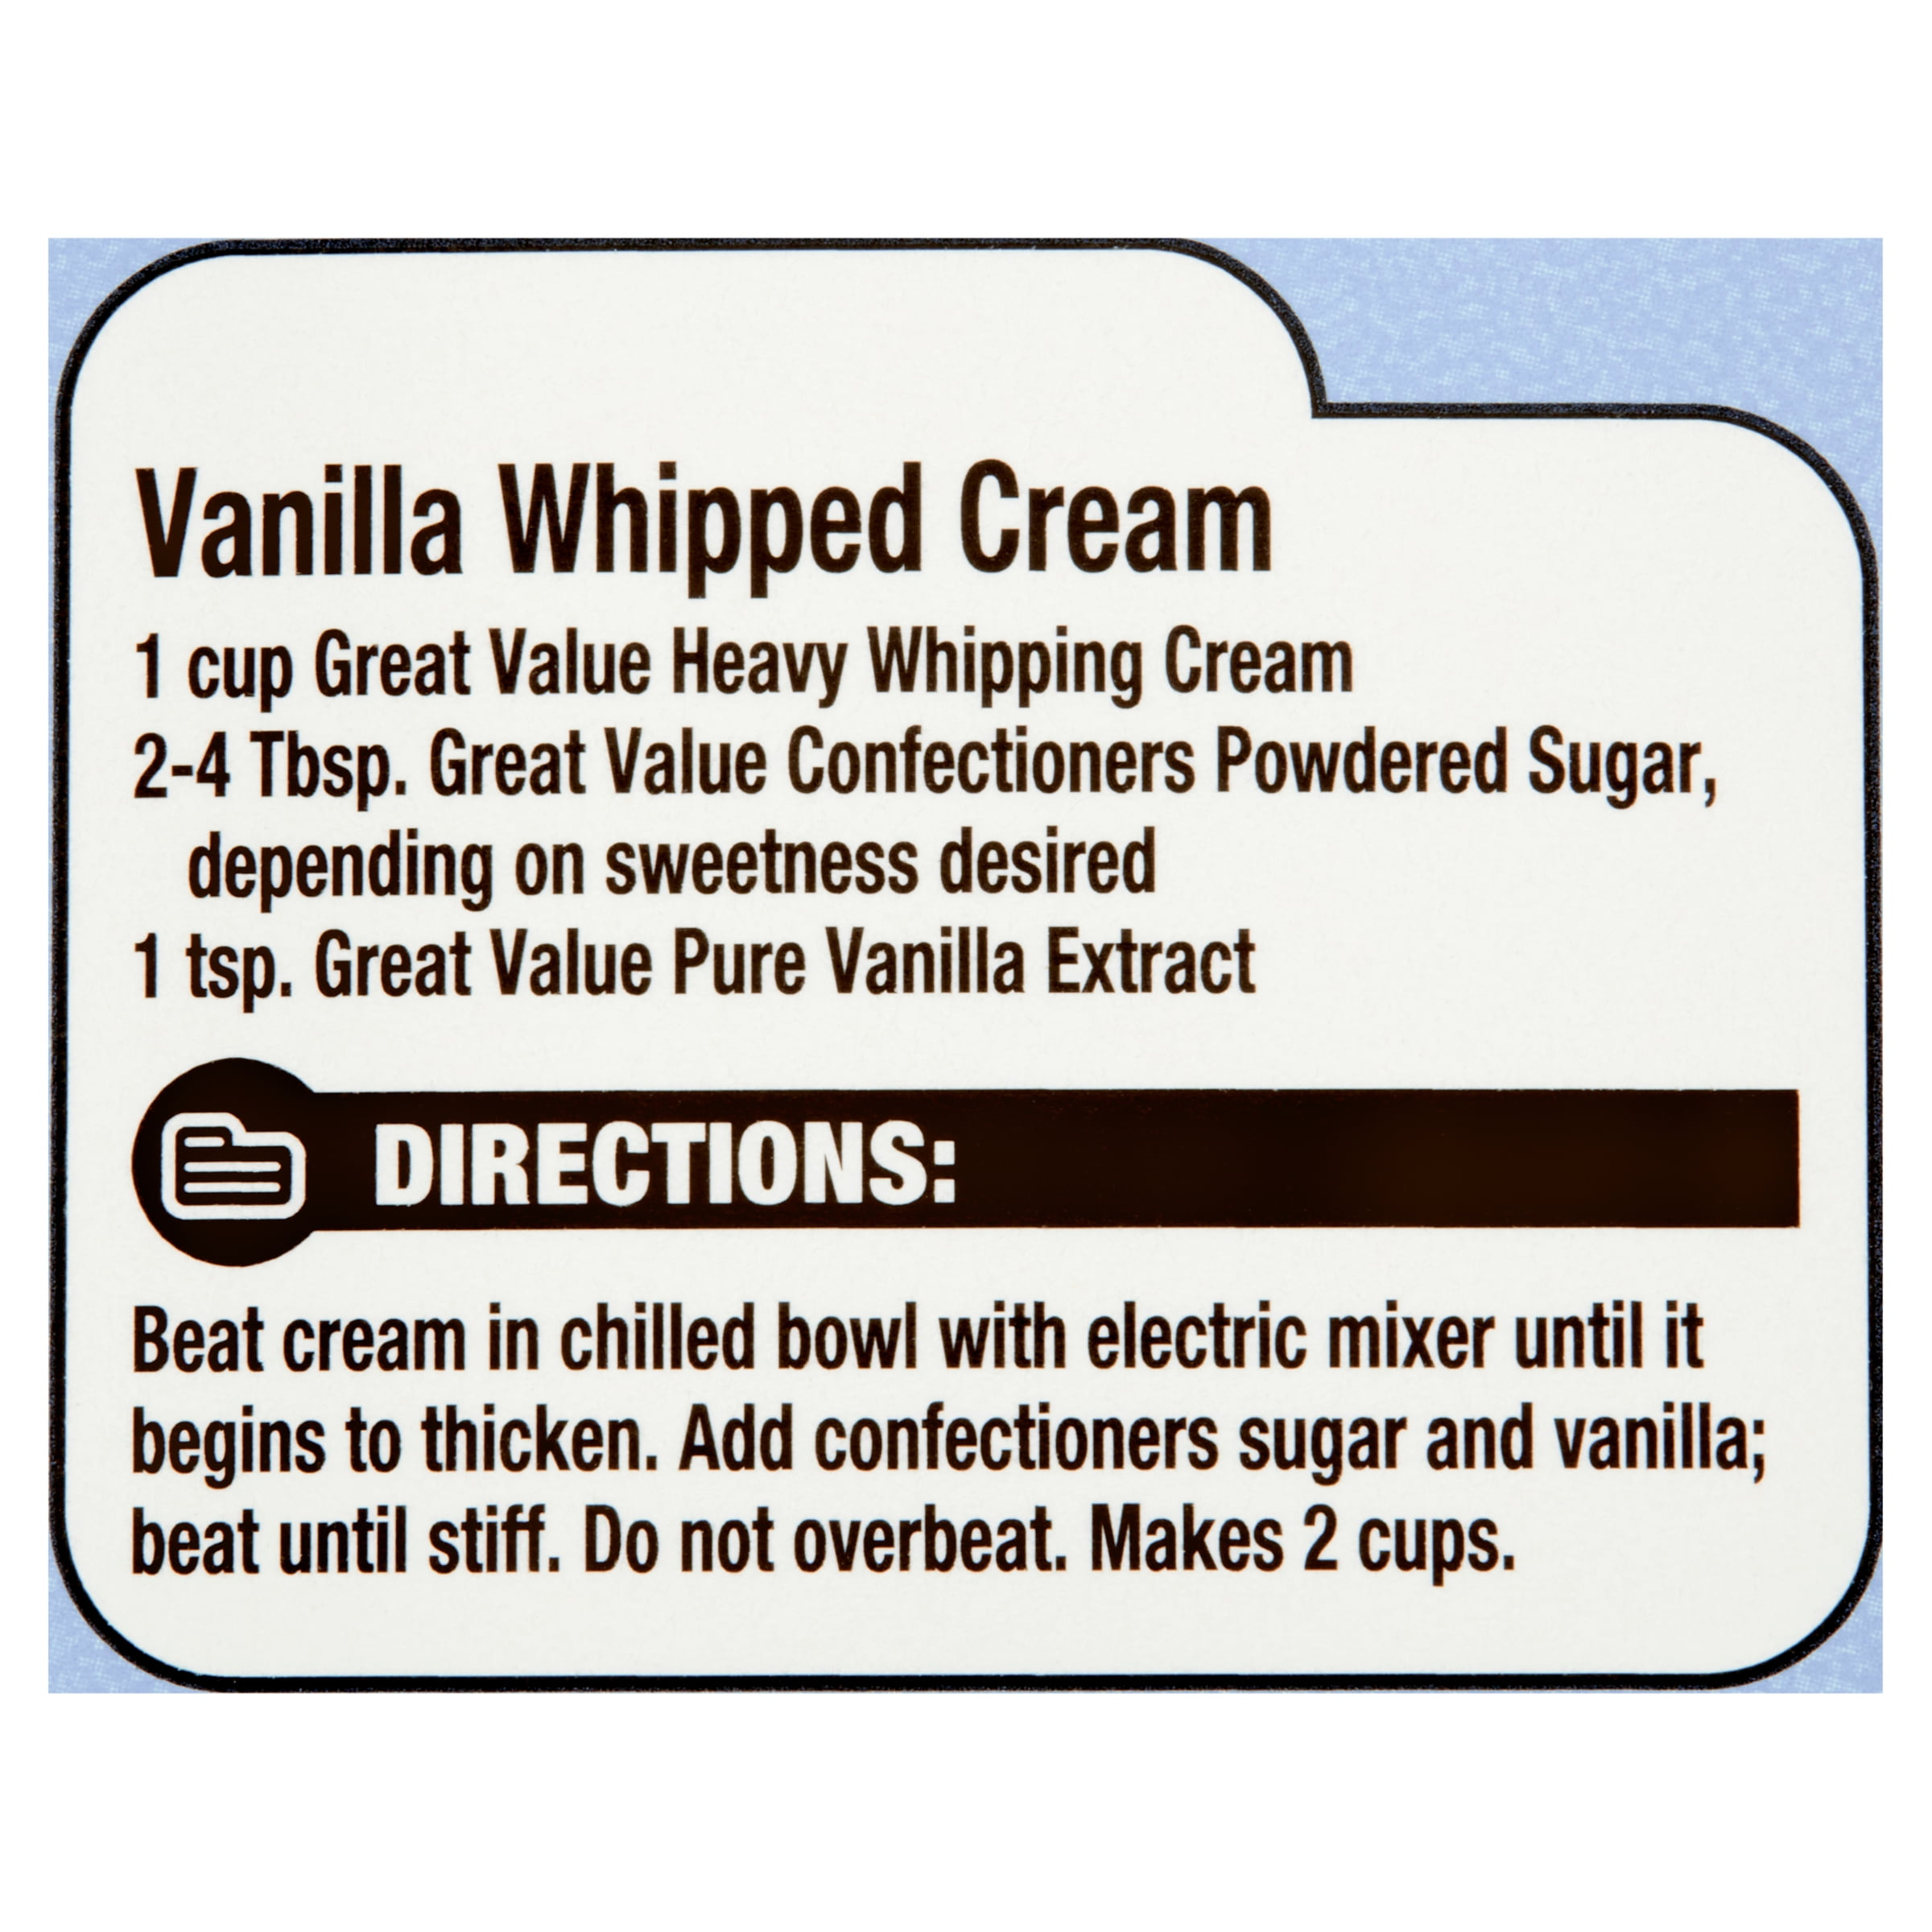 Extrait de vanille artificielle Great Value 250 ml